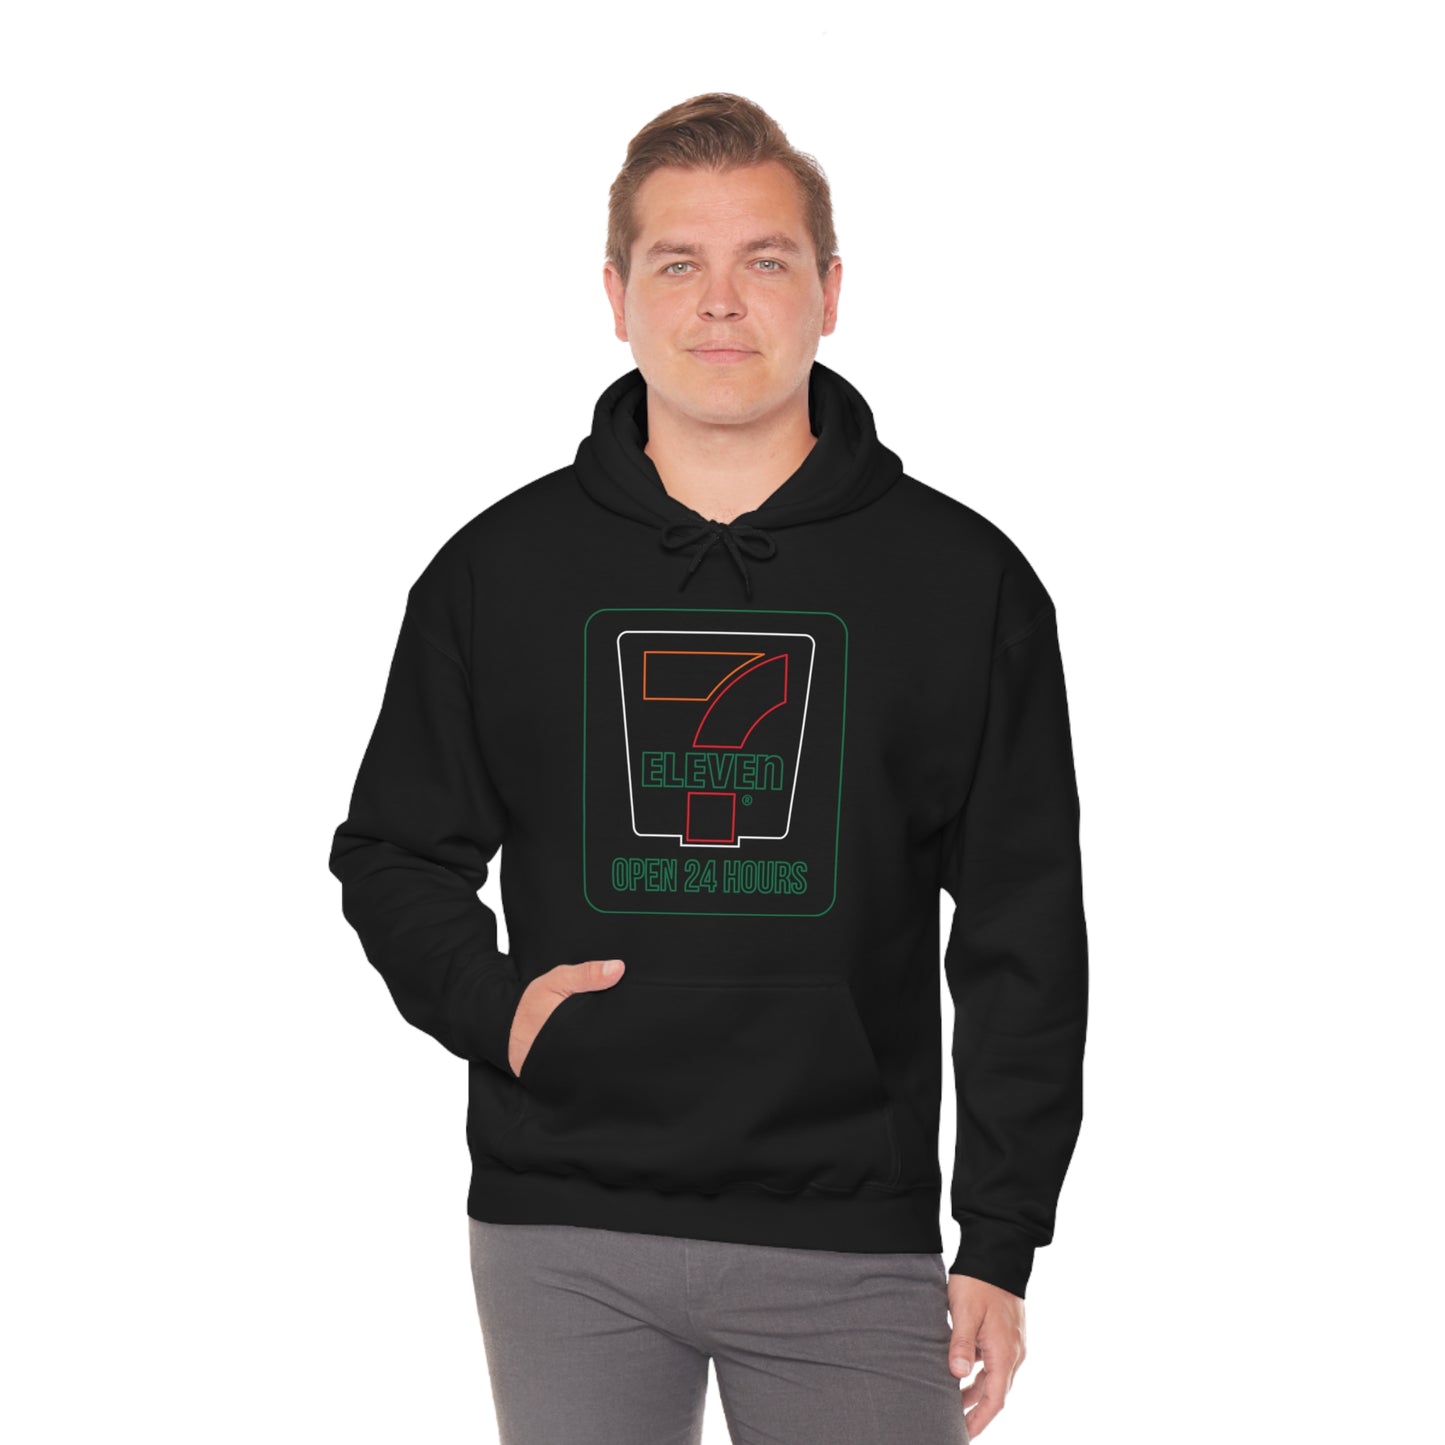 7-Eleven® Open 24 hours - Unisex Heavy Blend™ Hooded Sweatshirt